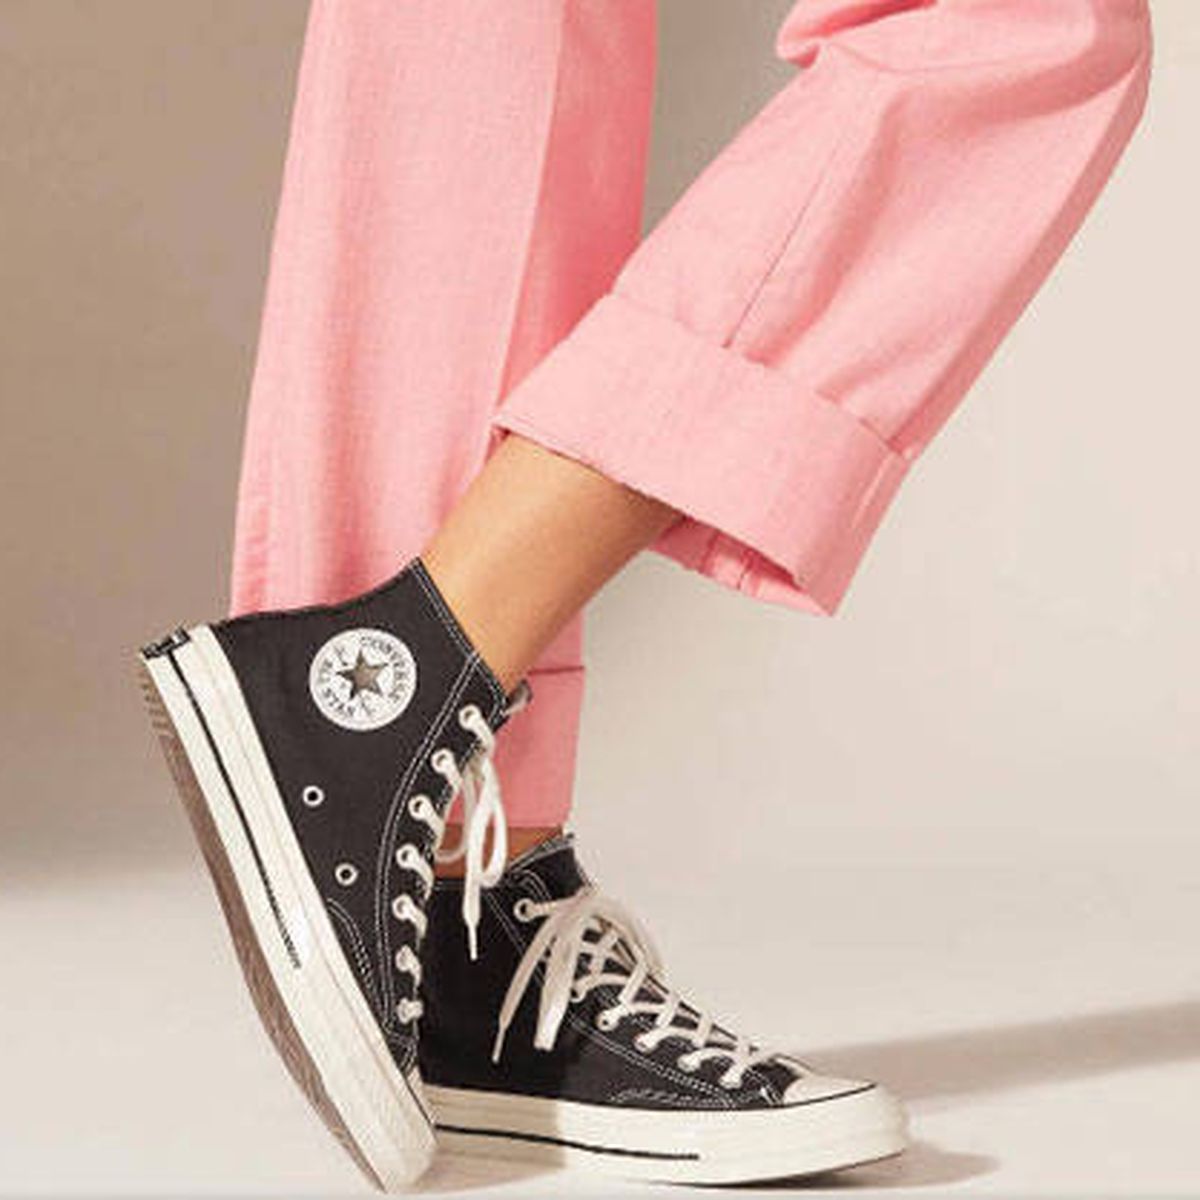 Ejecutar excepción muelle Converse con plataforma negras: las zapatillas que necesitas para tus looks